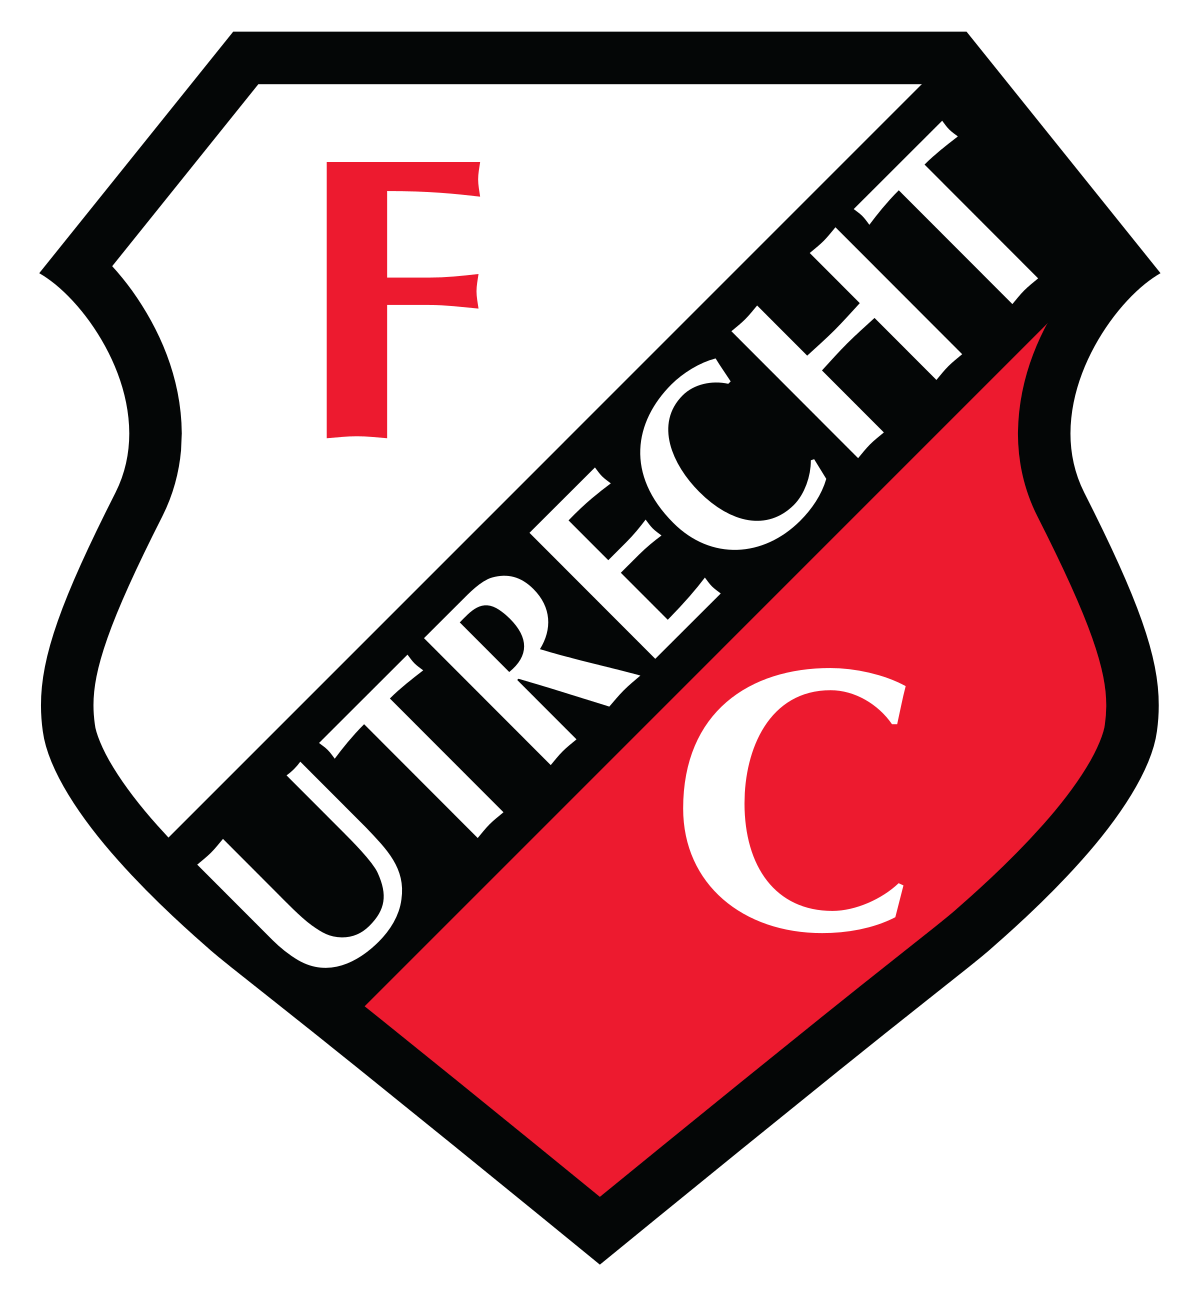 Utrecht W logo